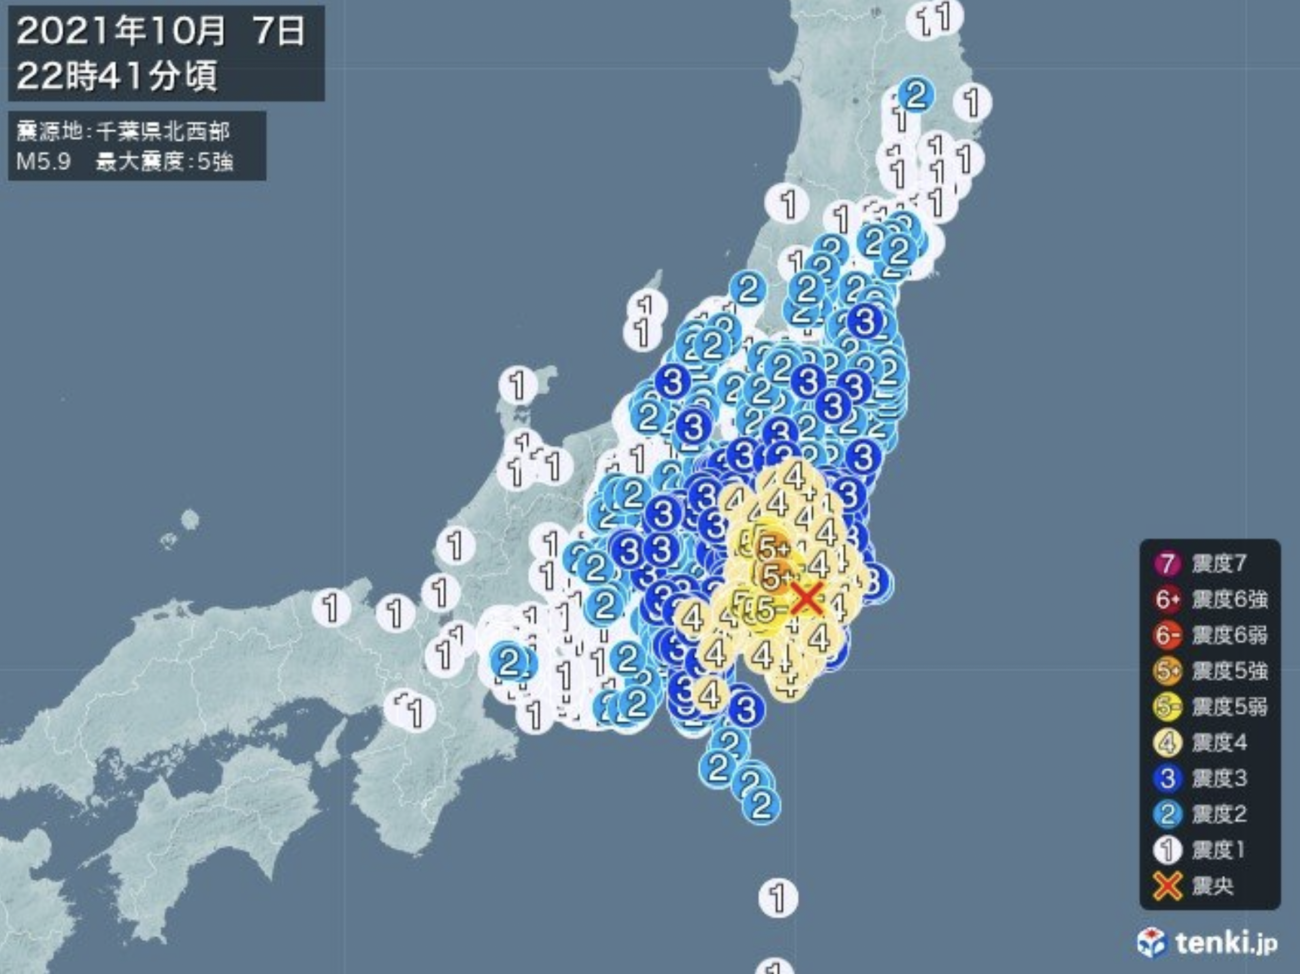 人工地震 東京で震度5強の地震 揺れは人工地震特有の波形 震源地は千葉ポートタワー直下と判明 Rapt理論のさらなる進化形